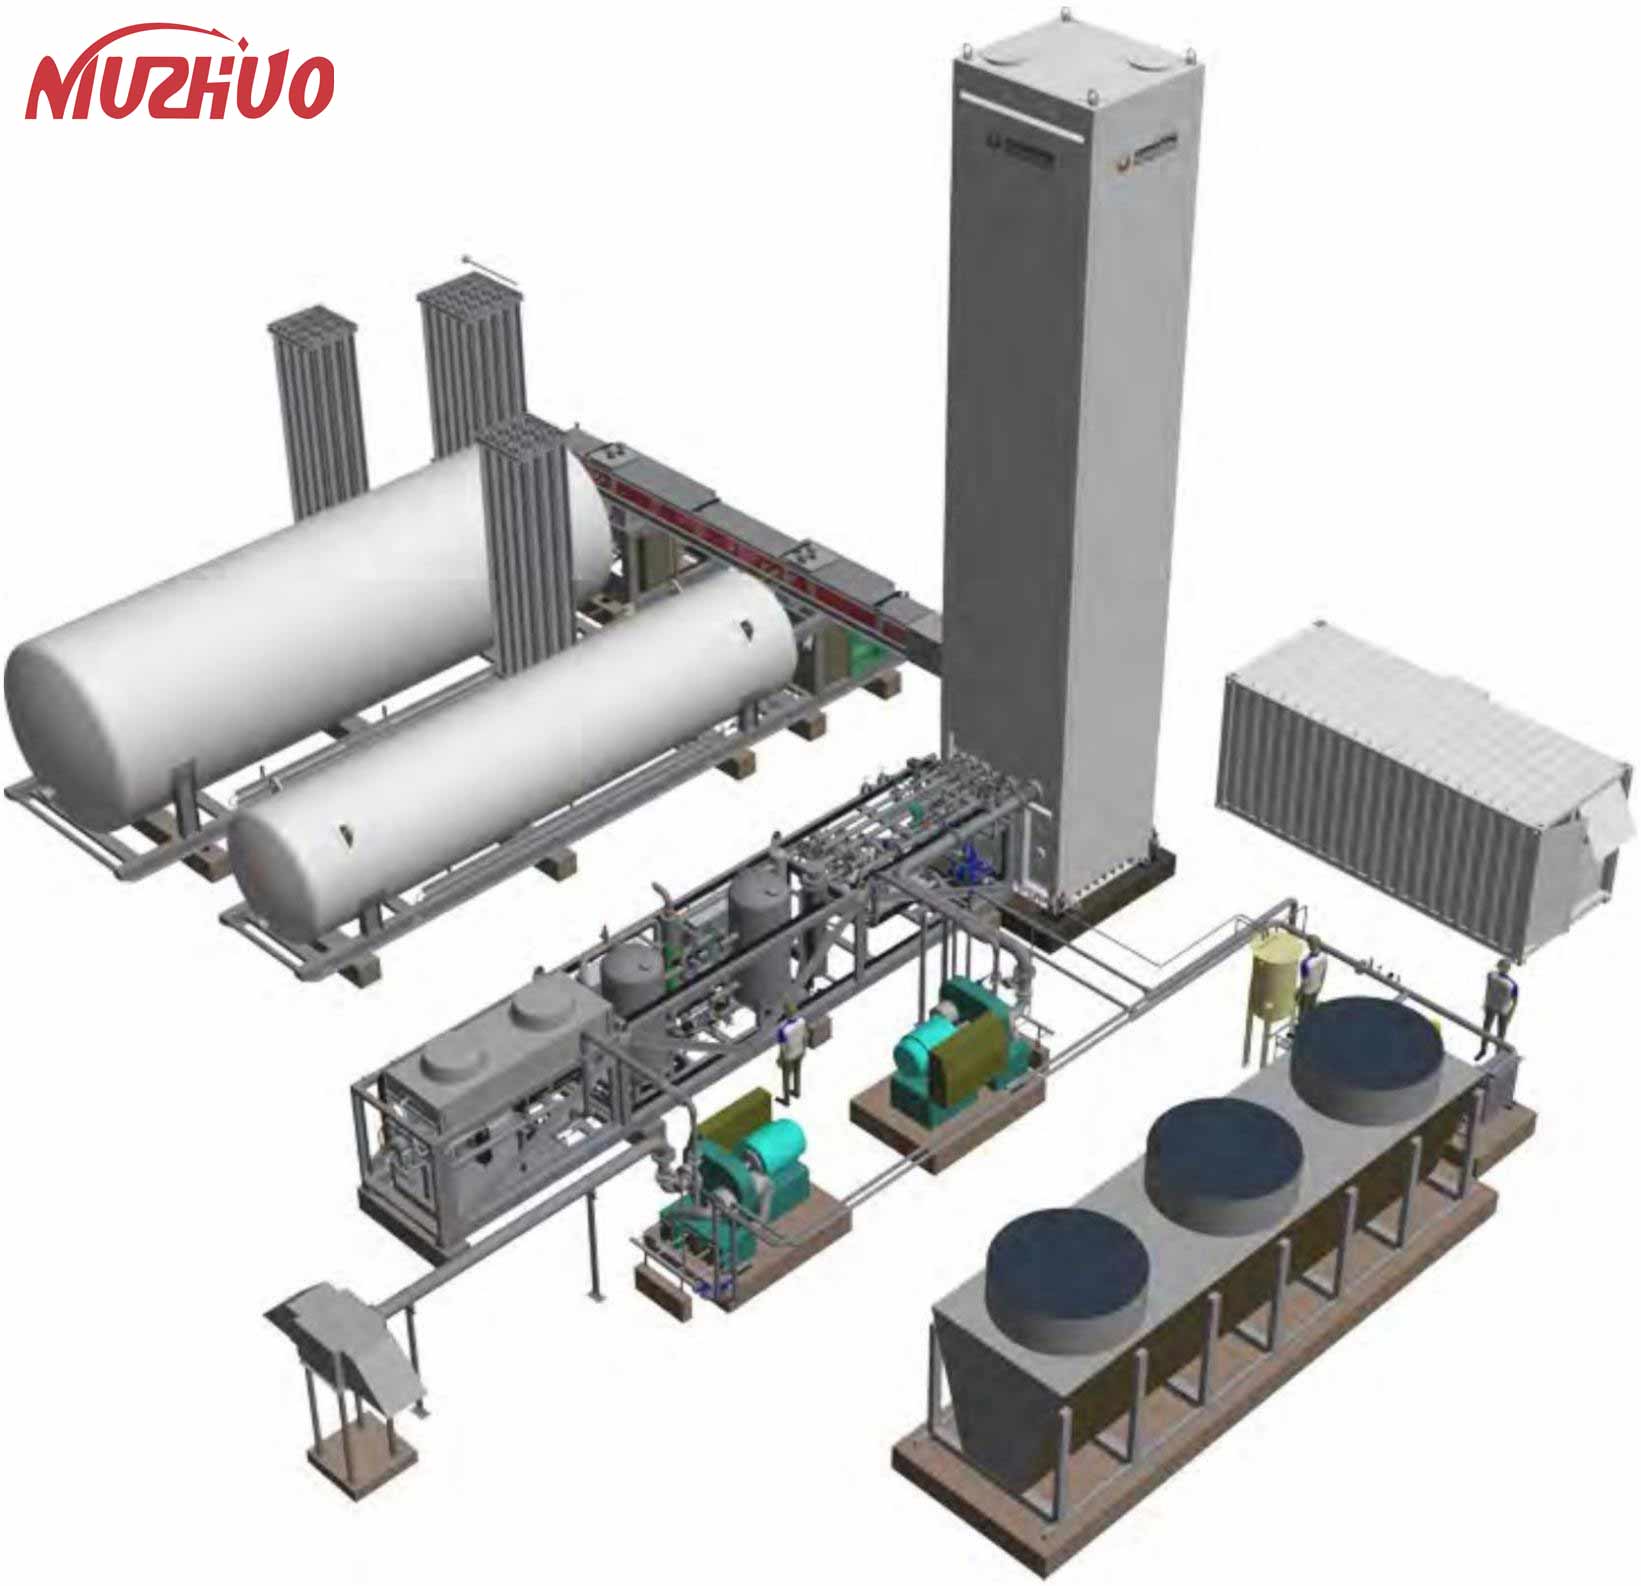 NUZHUO Visokokvalitetno postrojenje za tečni kisik Postrojenje za odvajanje zraka proizvedeno u Kini Istaknuta slika